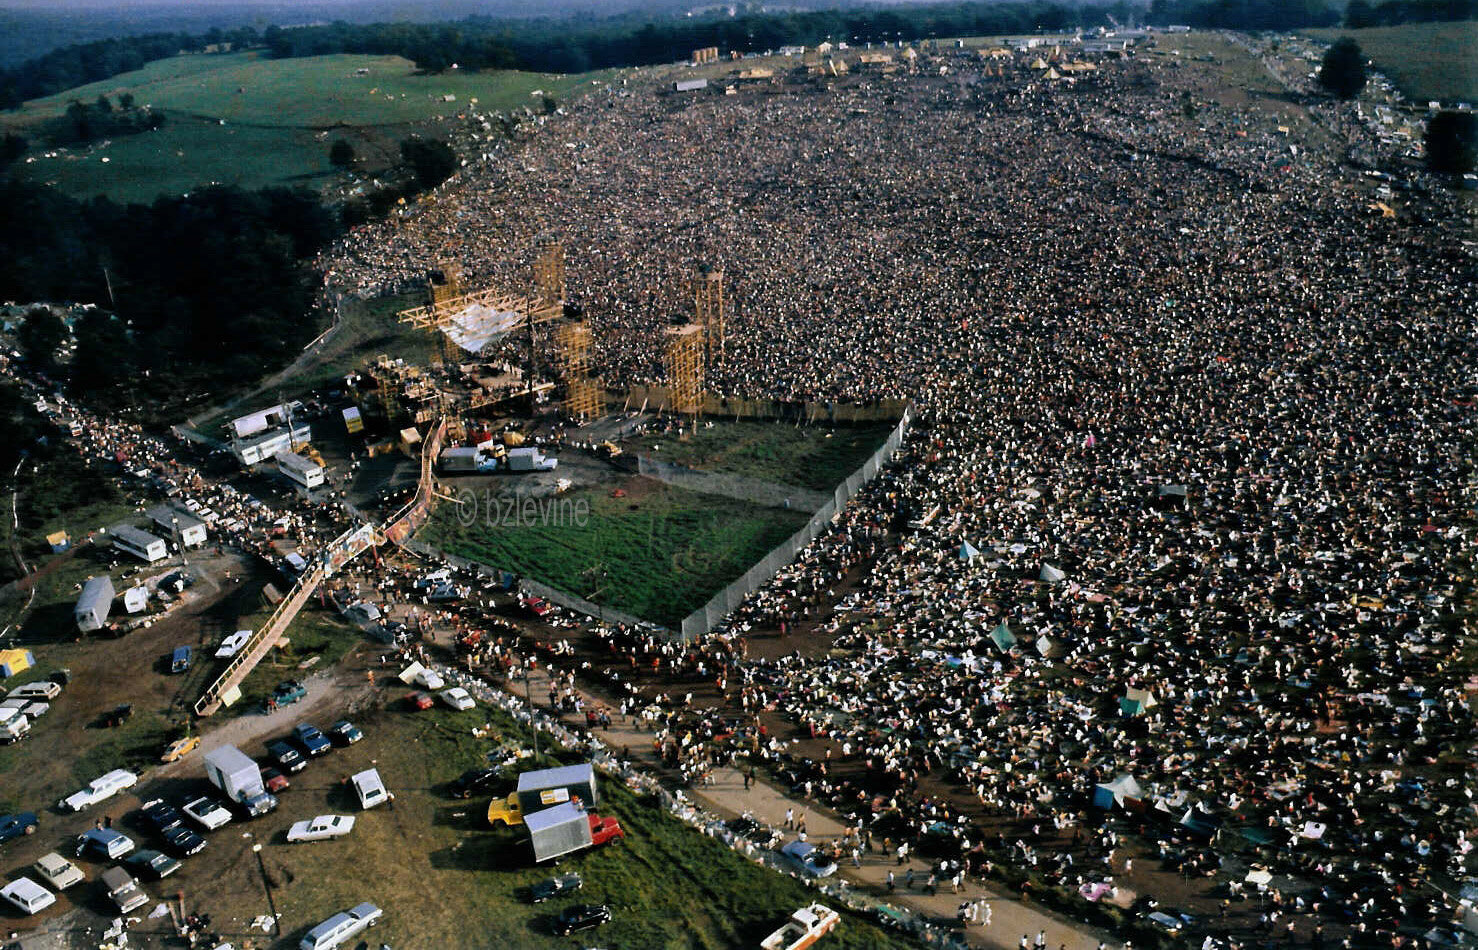 Quy mô to lớn của lễ hội Woodstock. Đây được xem như là 1 trong số những lễ hội âm nhạc to lớn nhất lịch sử nước Mỹ.